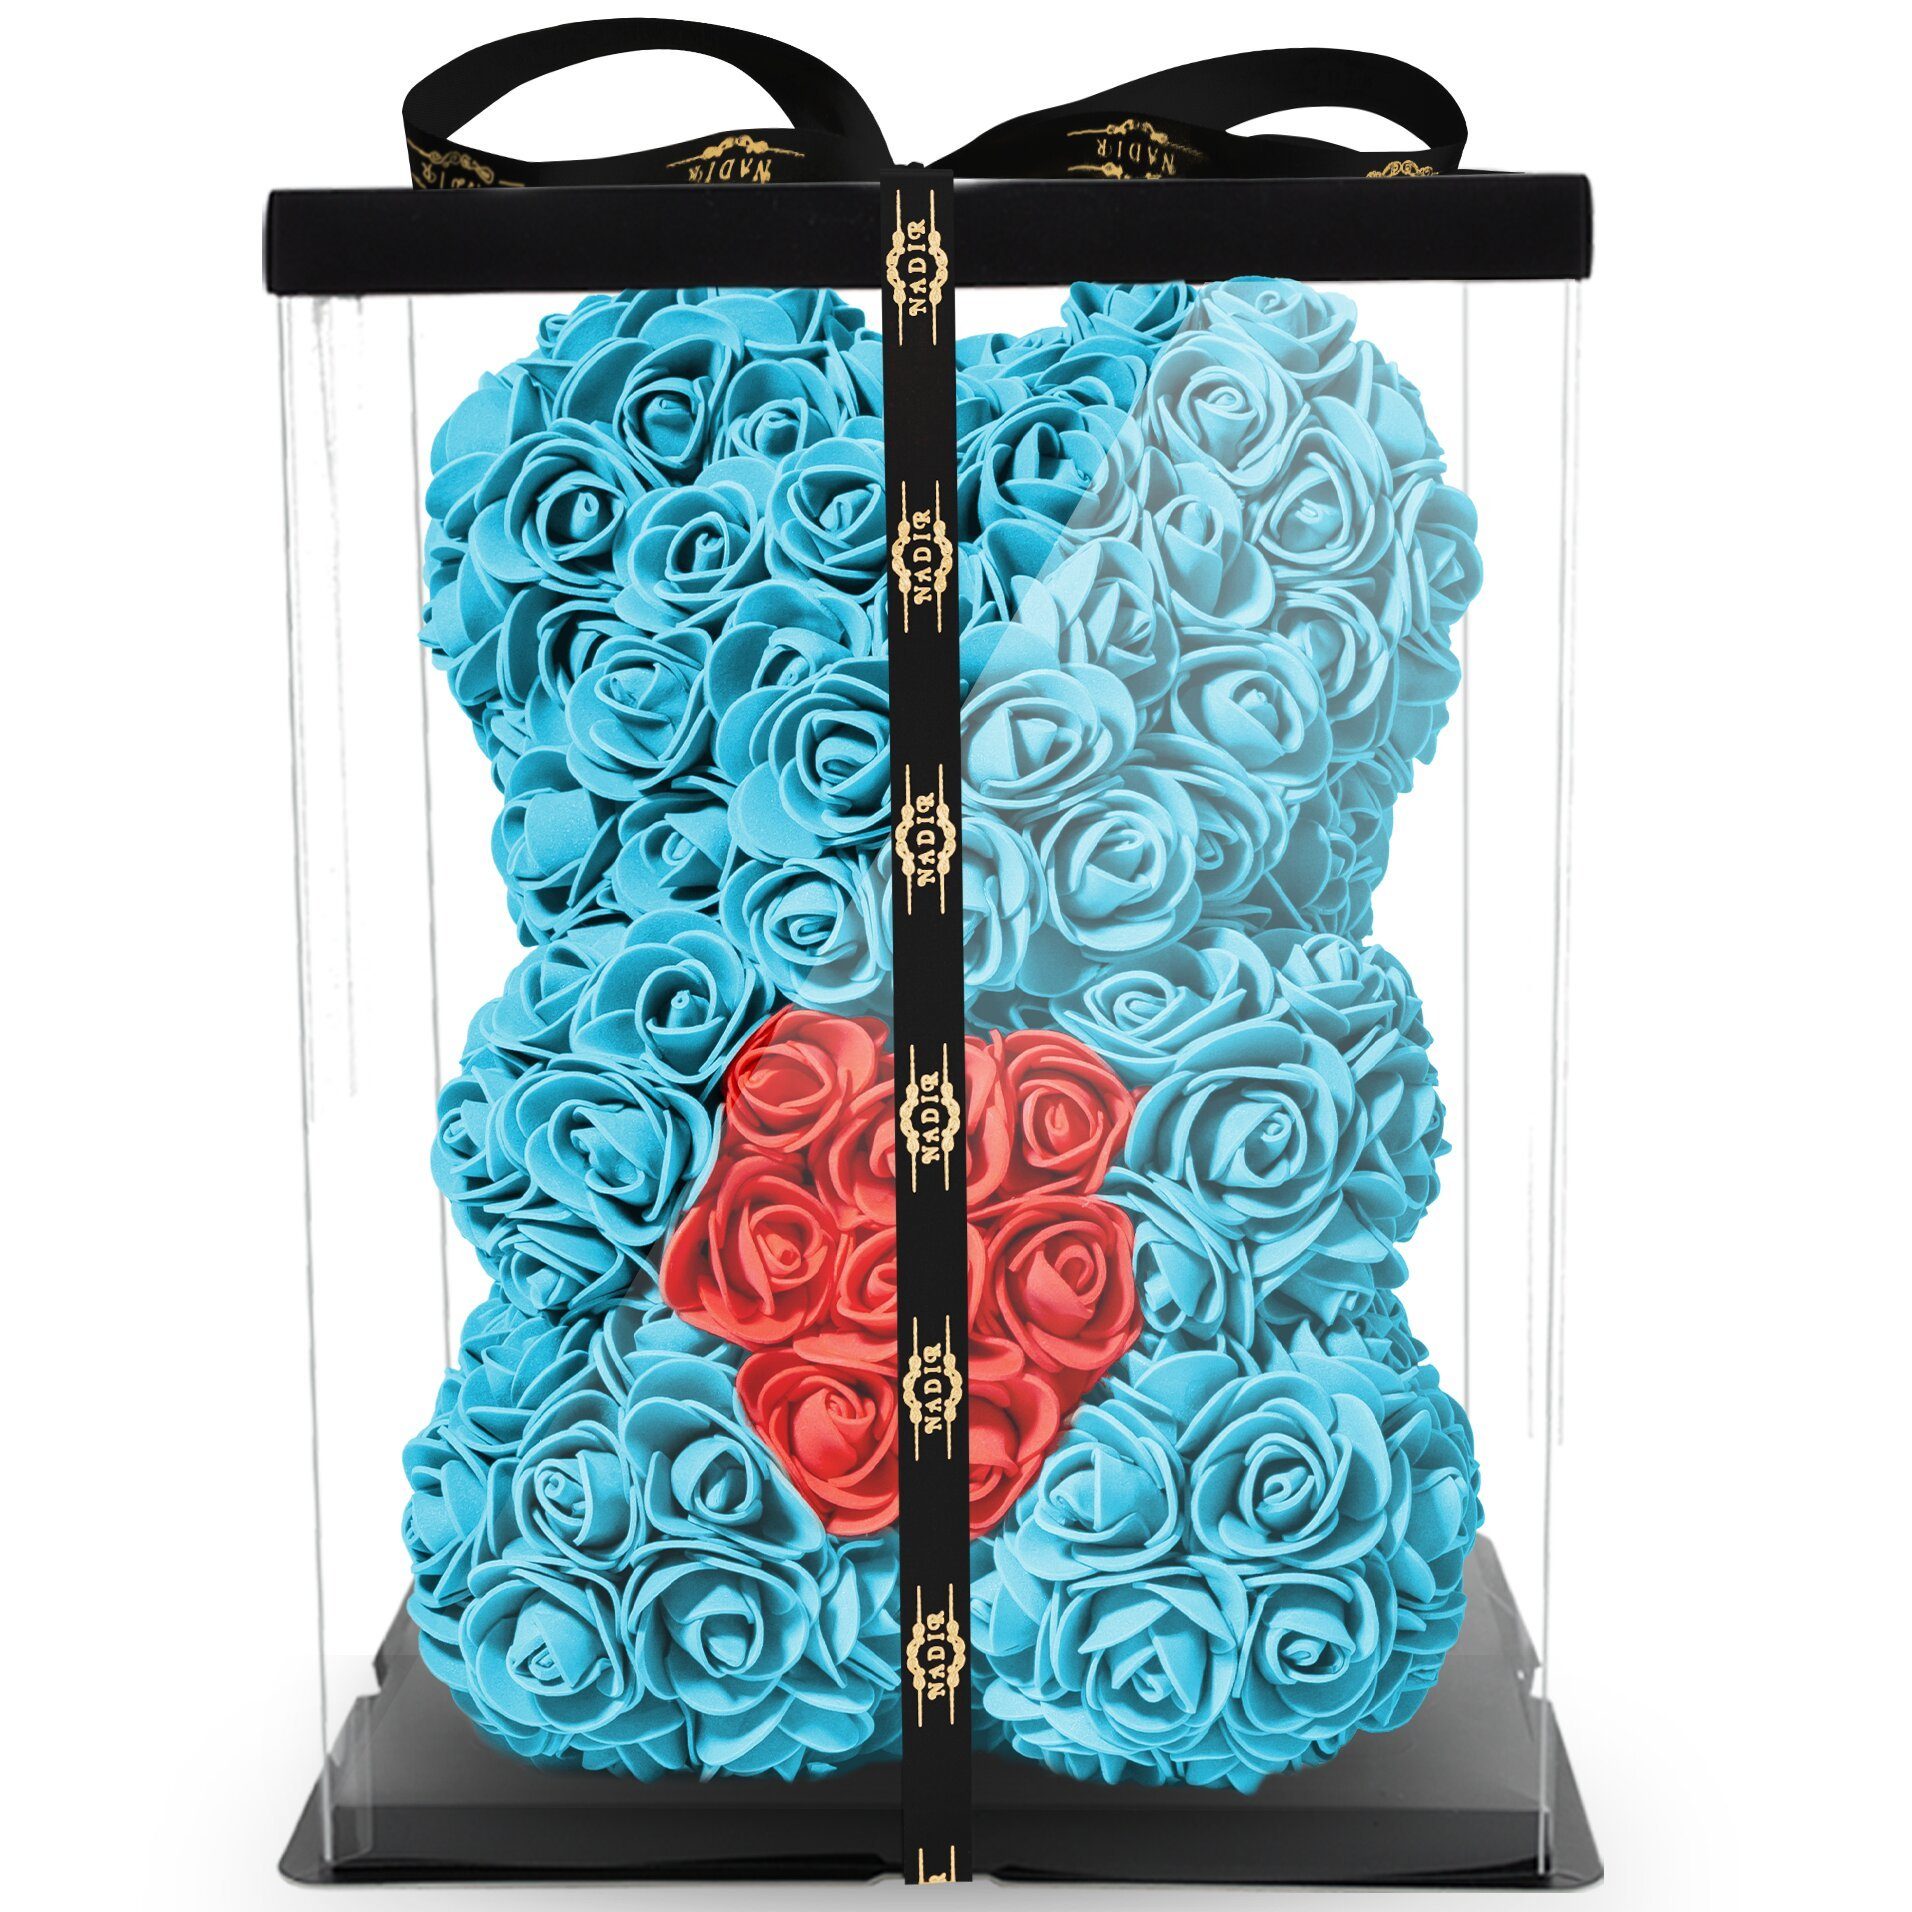 Kunstblume Rosenbär mit Geschenkbox versch. Farben mit Herz - Geschenk für Freundin Jahrestag Geburtstag Hochzeit Geburtstagsgeschenk Freundin 25 cm Ewige Rosen, NADIR